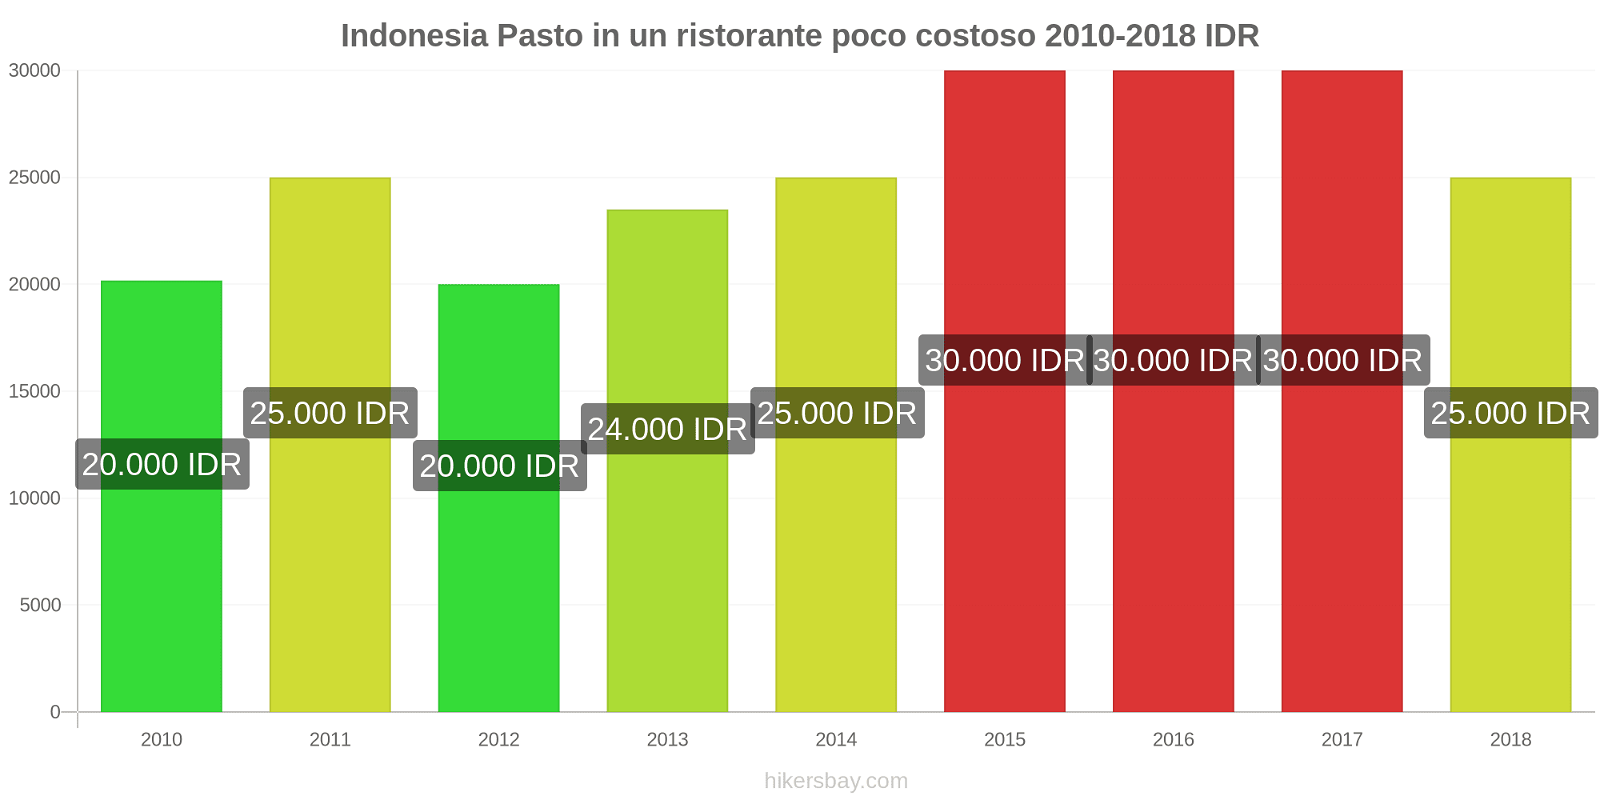 Indonesia cambi di prezzo Pasto in un ristorante economico hikersbay.com